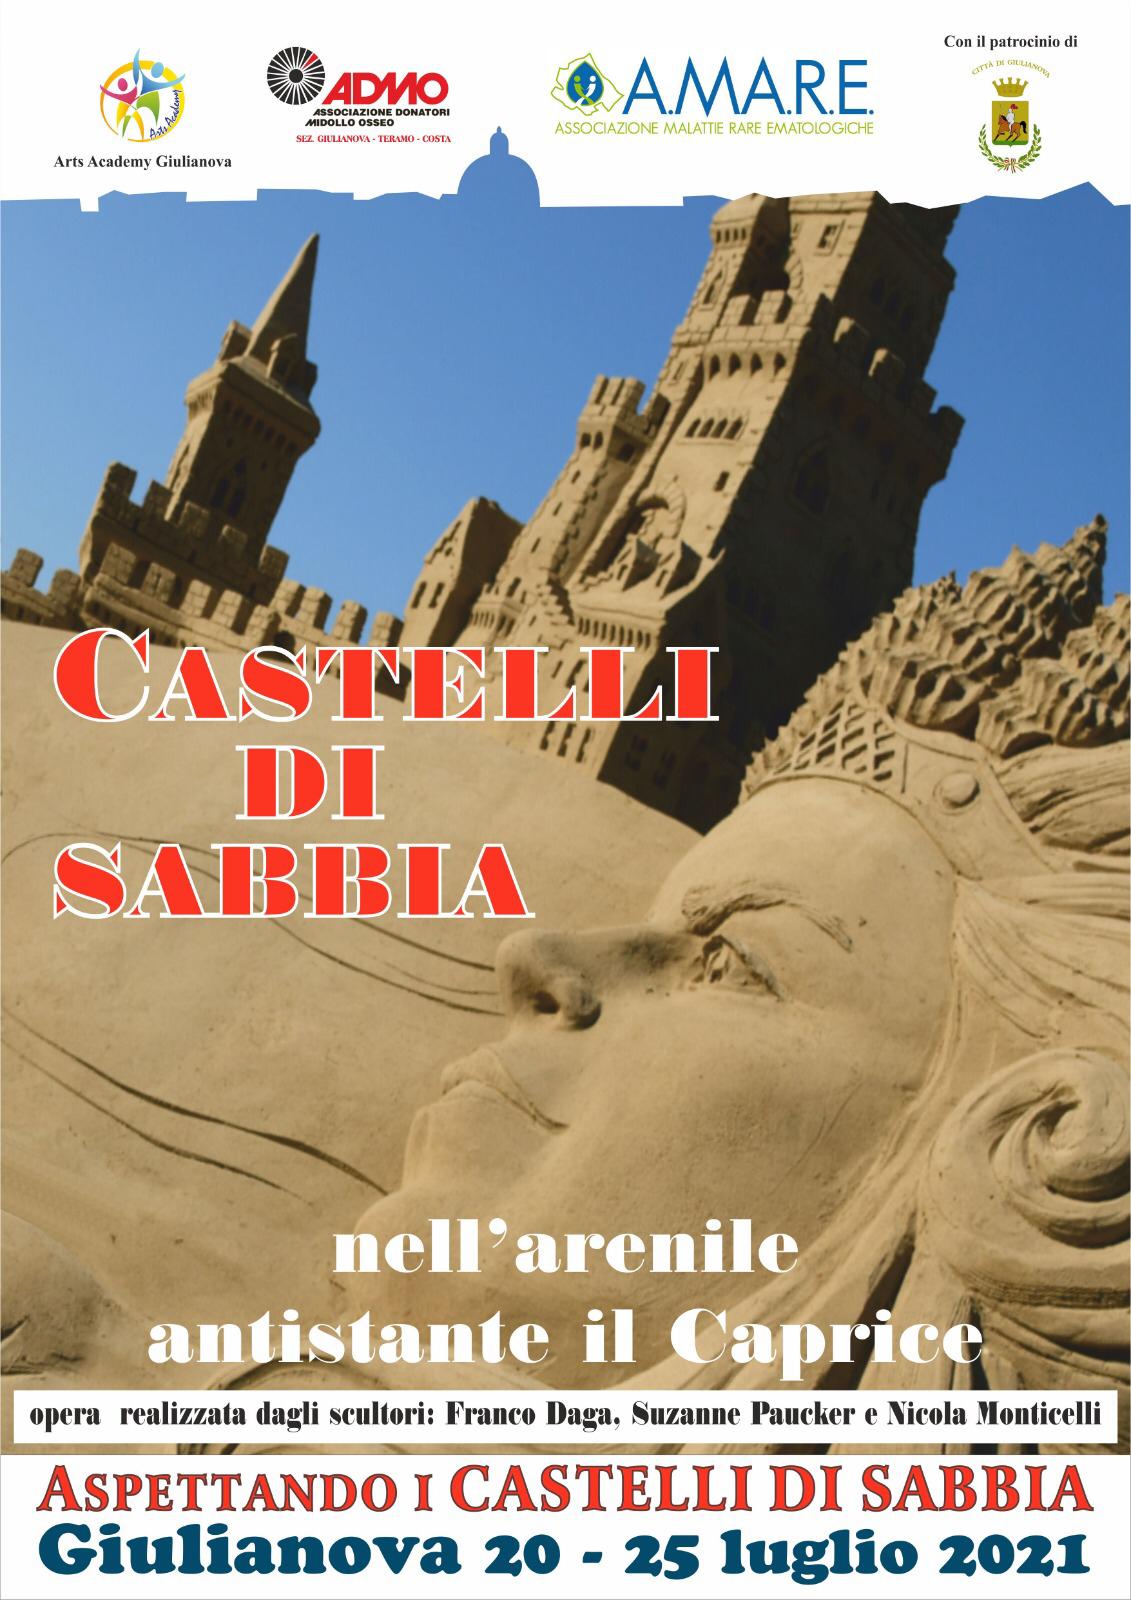 Aspettando i "Castelli di sabbia" 2021 - Giulianova